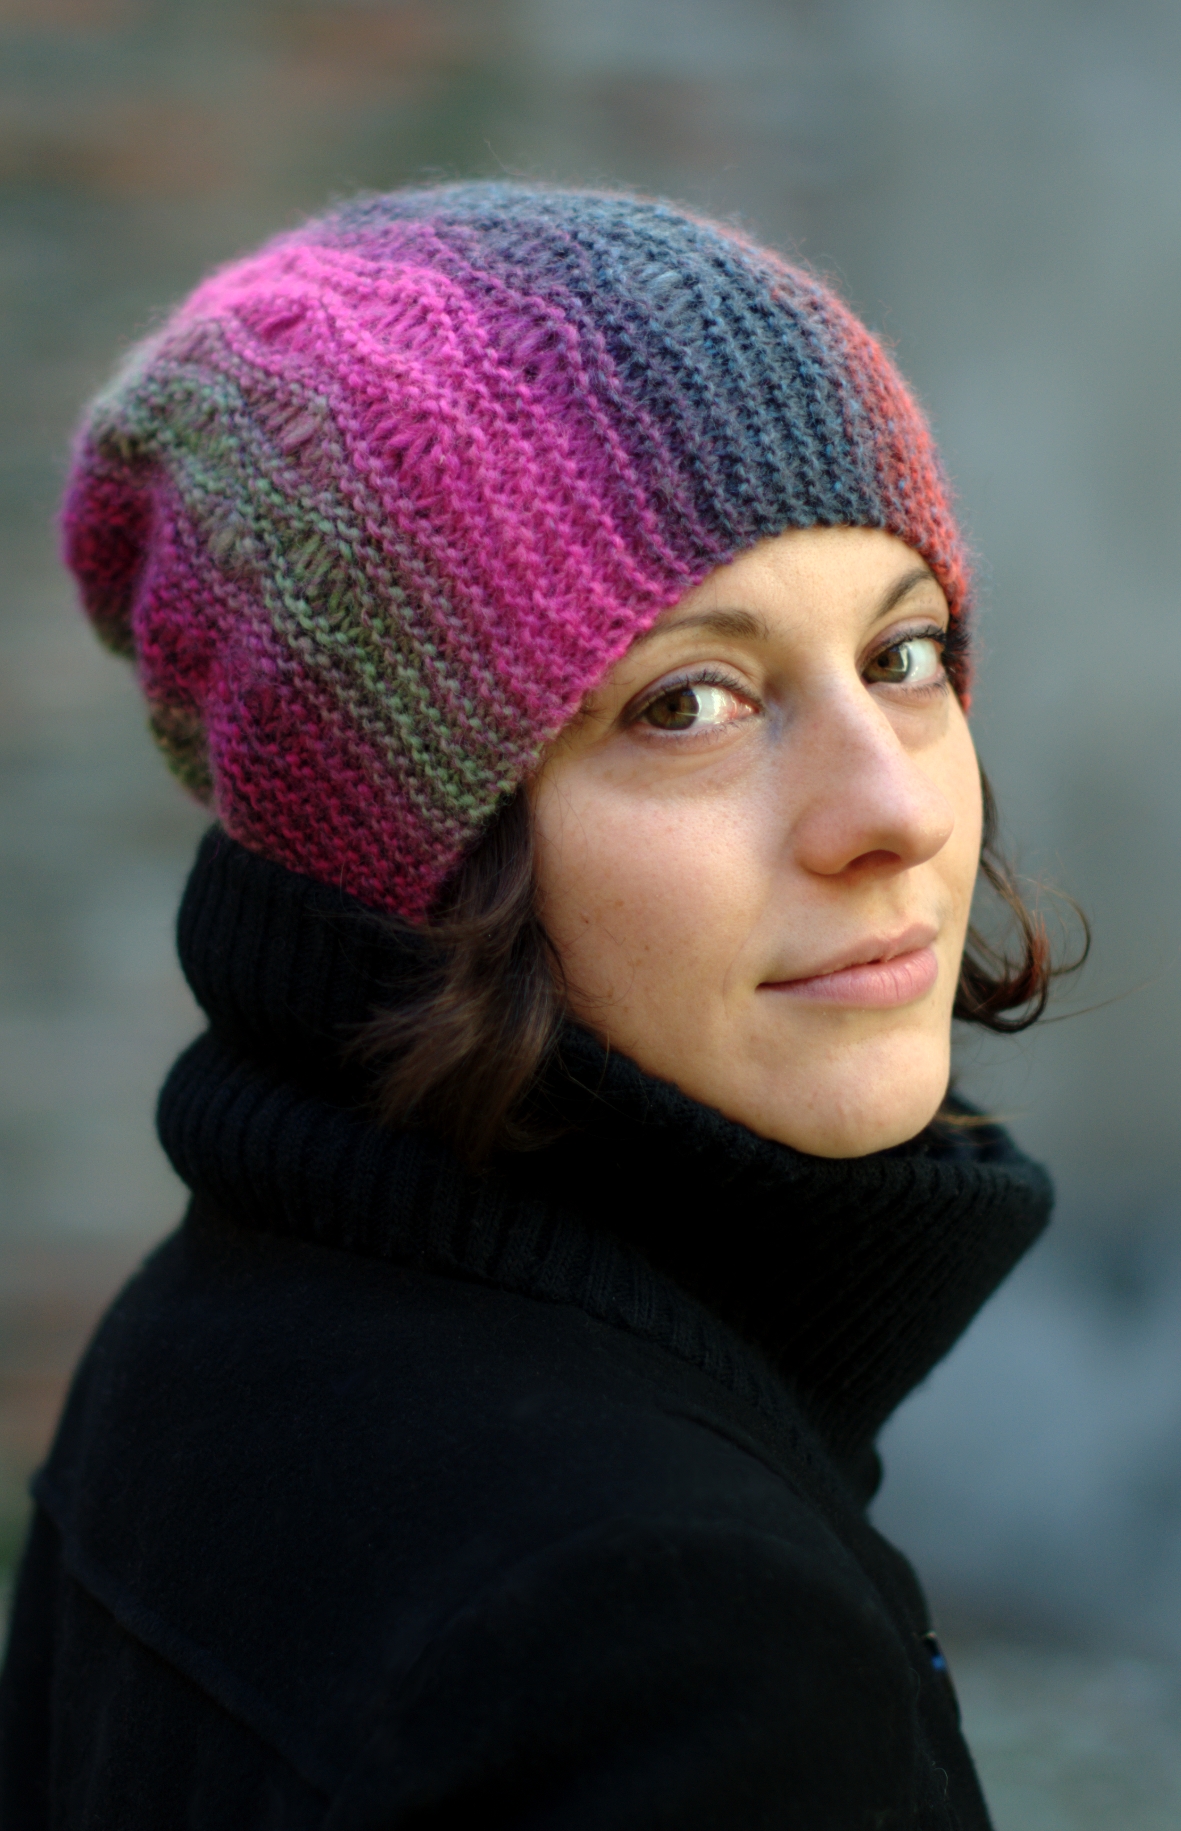 Marina sideways knit dropped stitch slouchy Hat knitting pattern